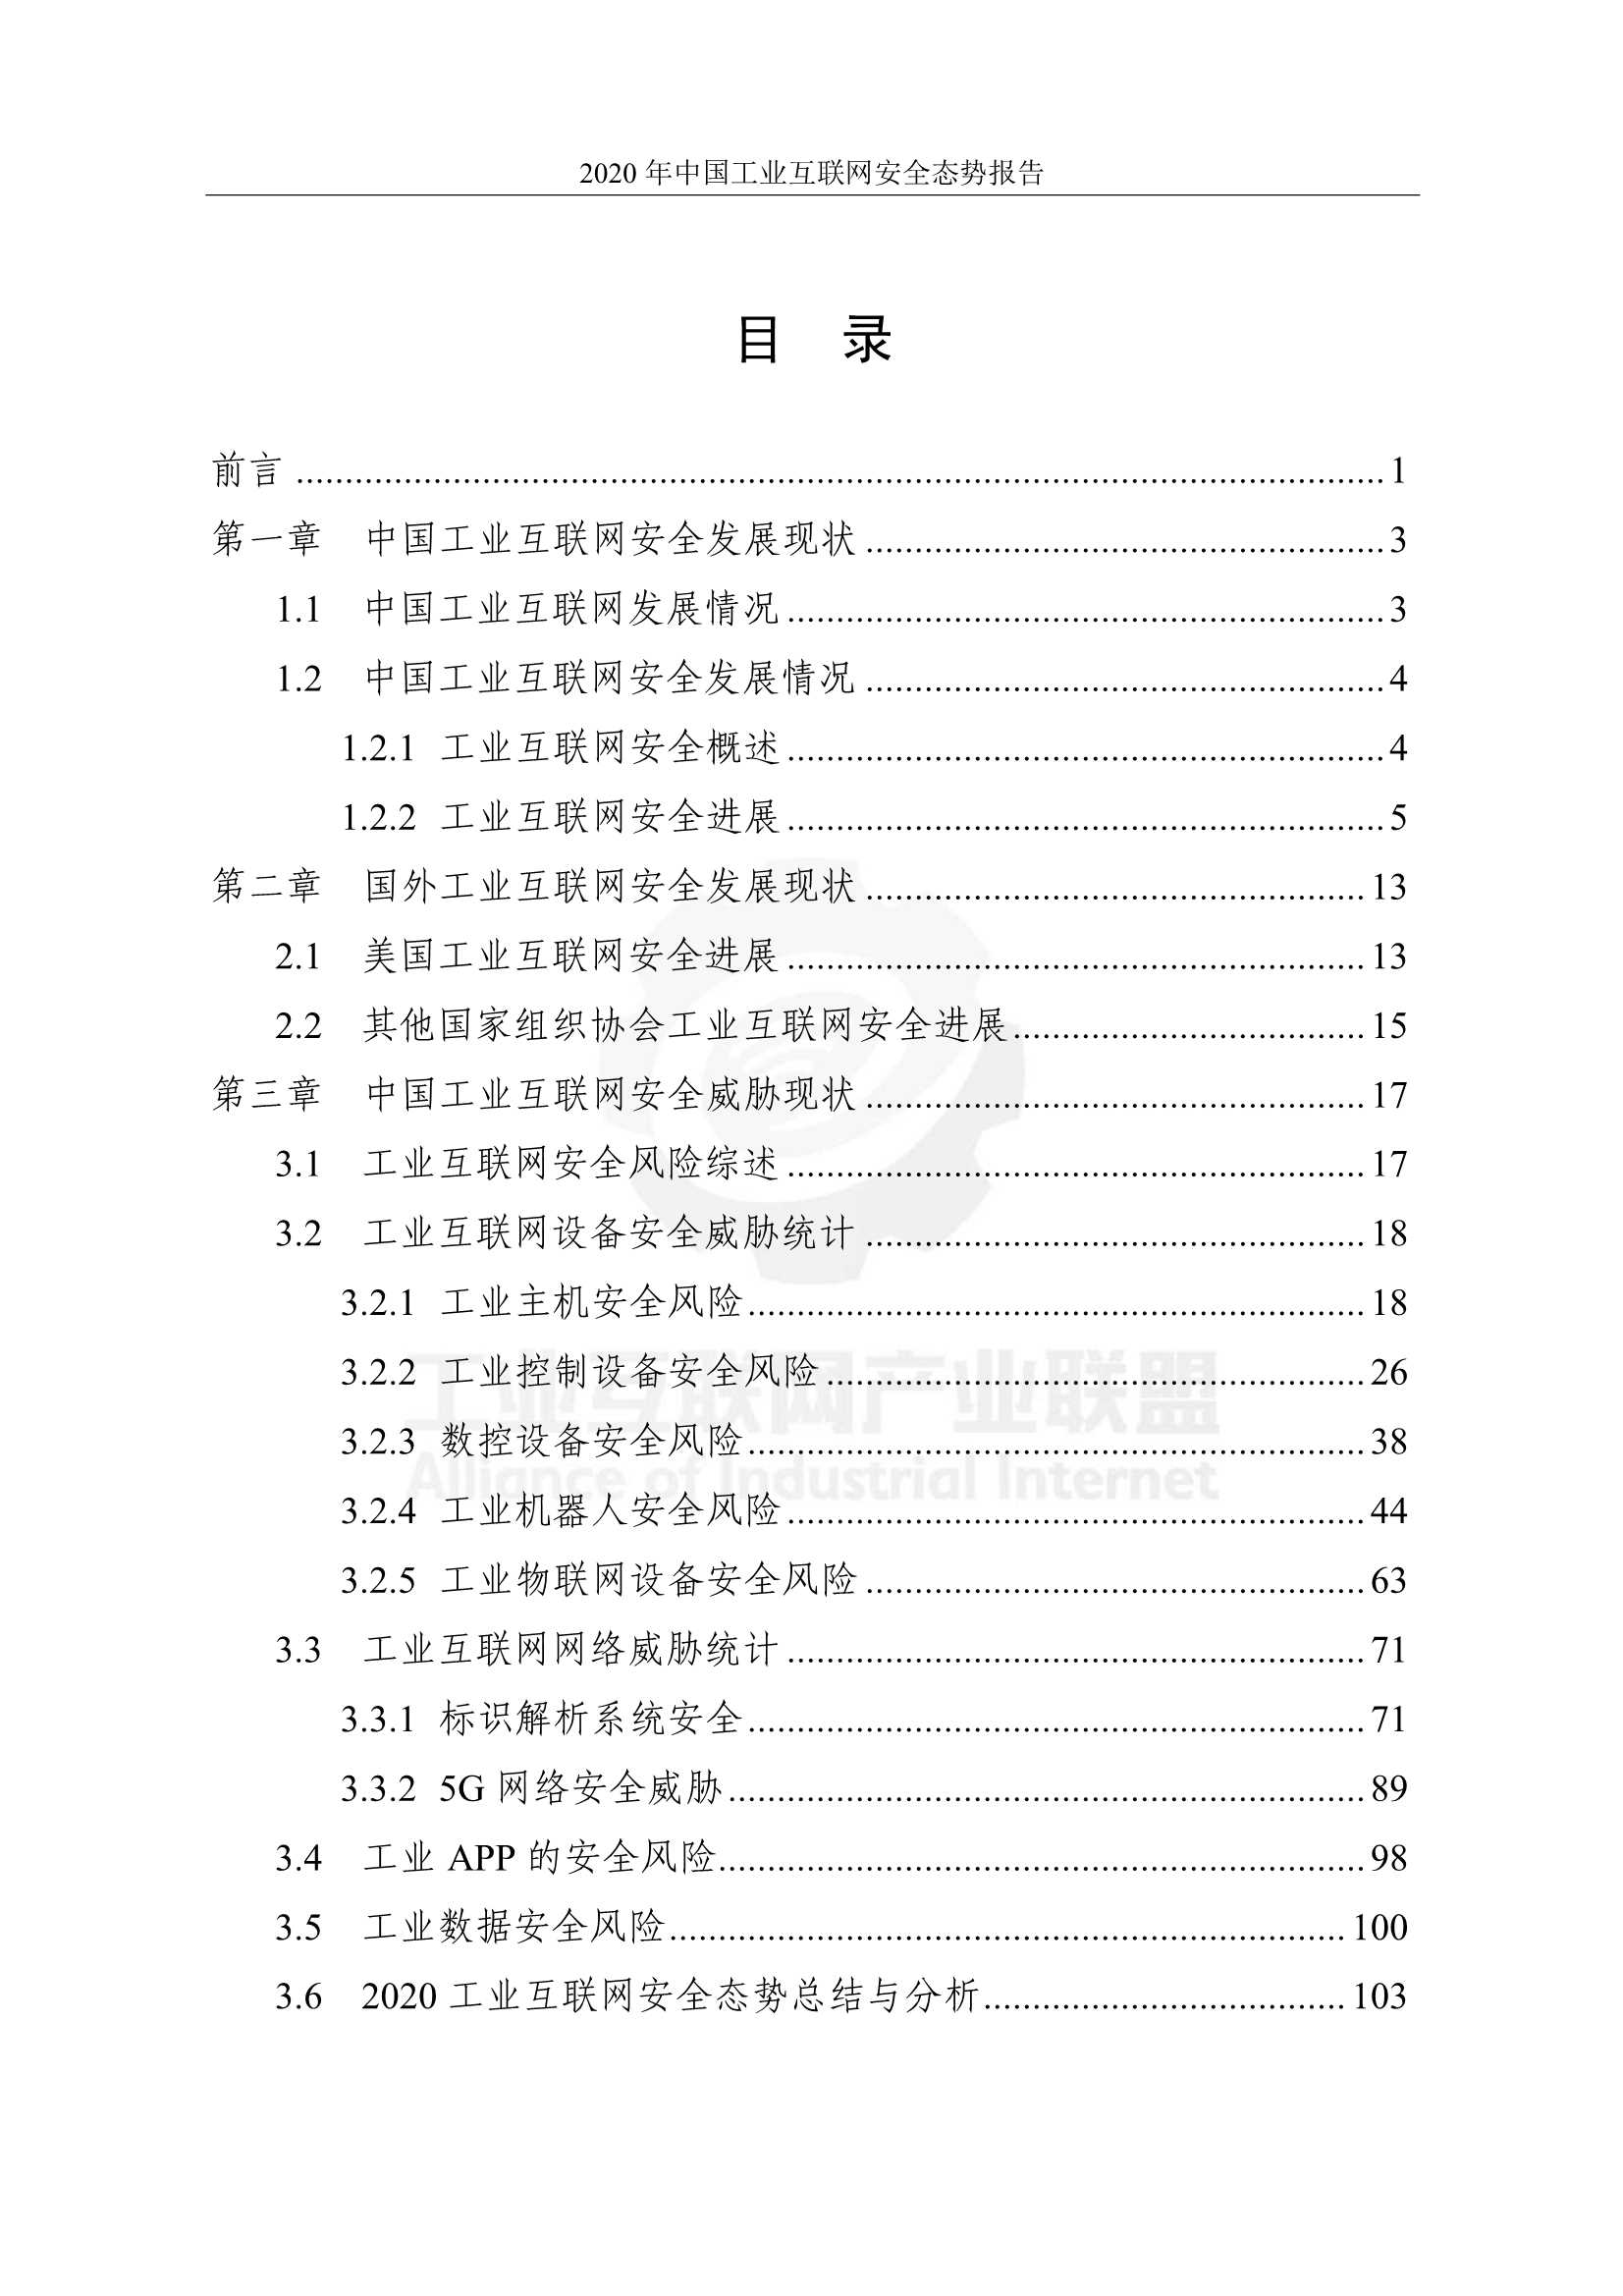 产业联盟-中国工业互联网安全态势报告（2020年）-2022.01-208页